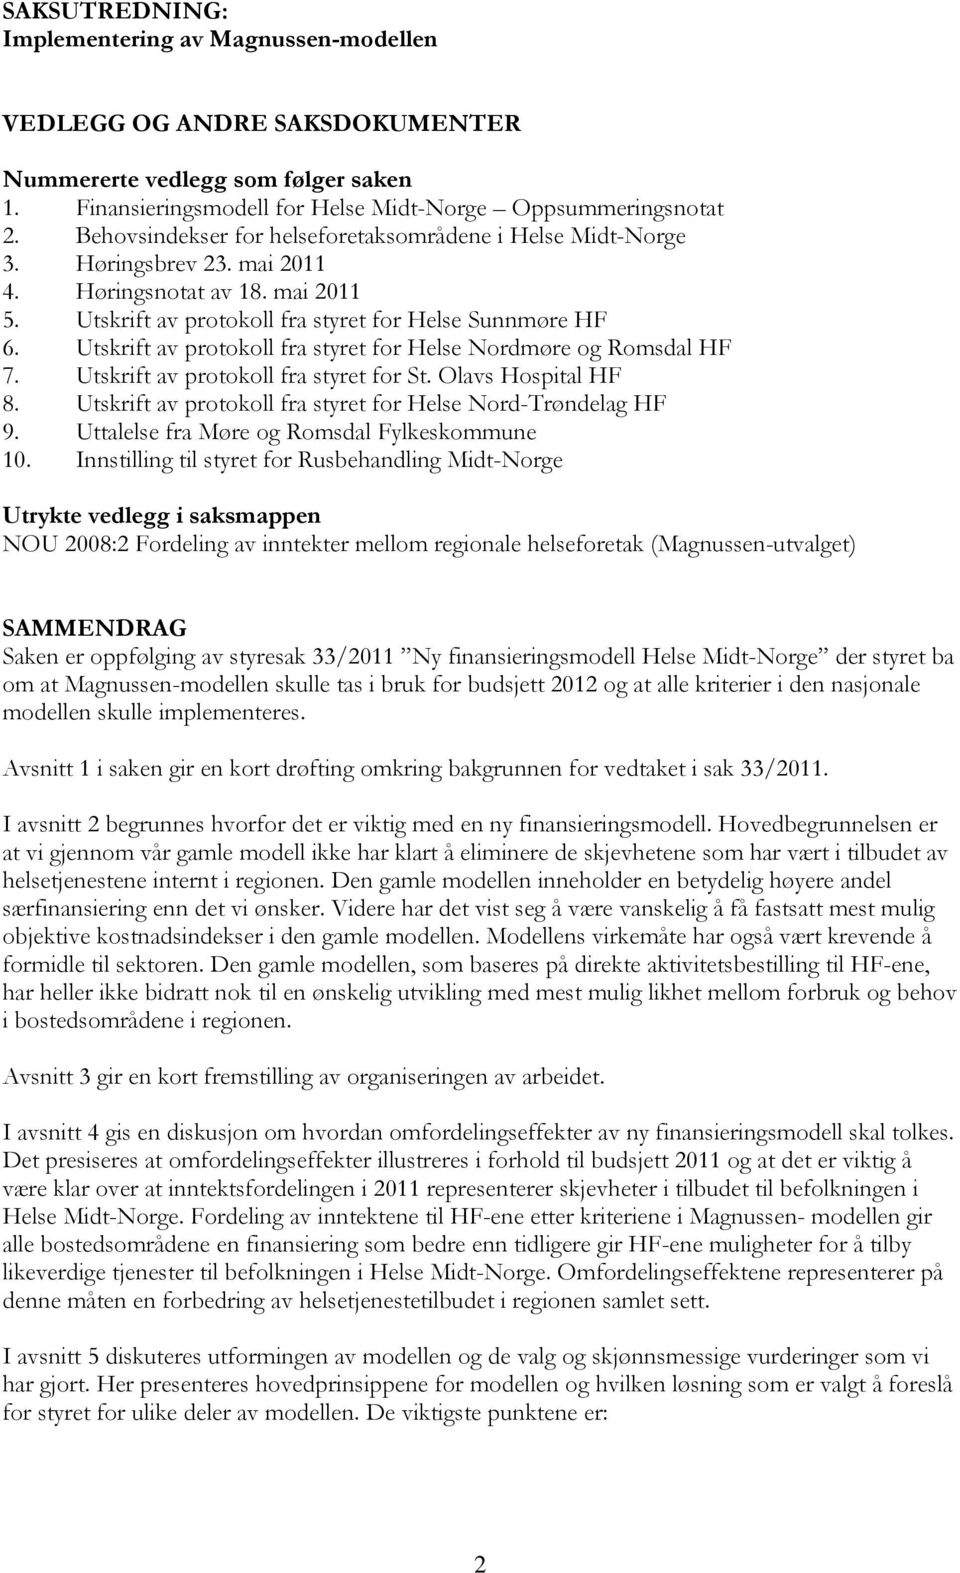 Utskrift av protokoll fra styret for Helse Nordmøre og Romsdal HF 7. Utskrift av protokoll fra styret for St. Olavs Hospital HF 8. Utskrift av protokoll fra styret for Helse Nord-Trøndelag HF 9.